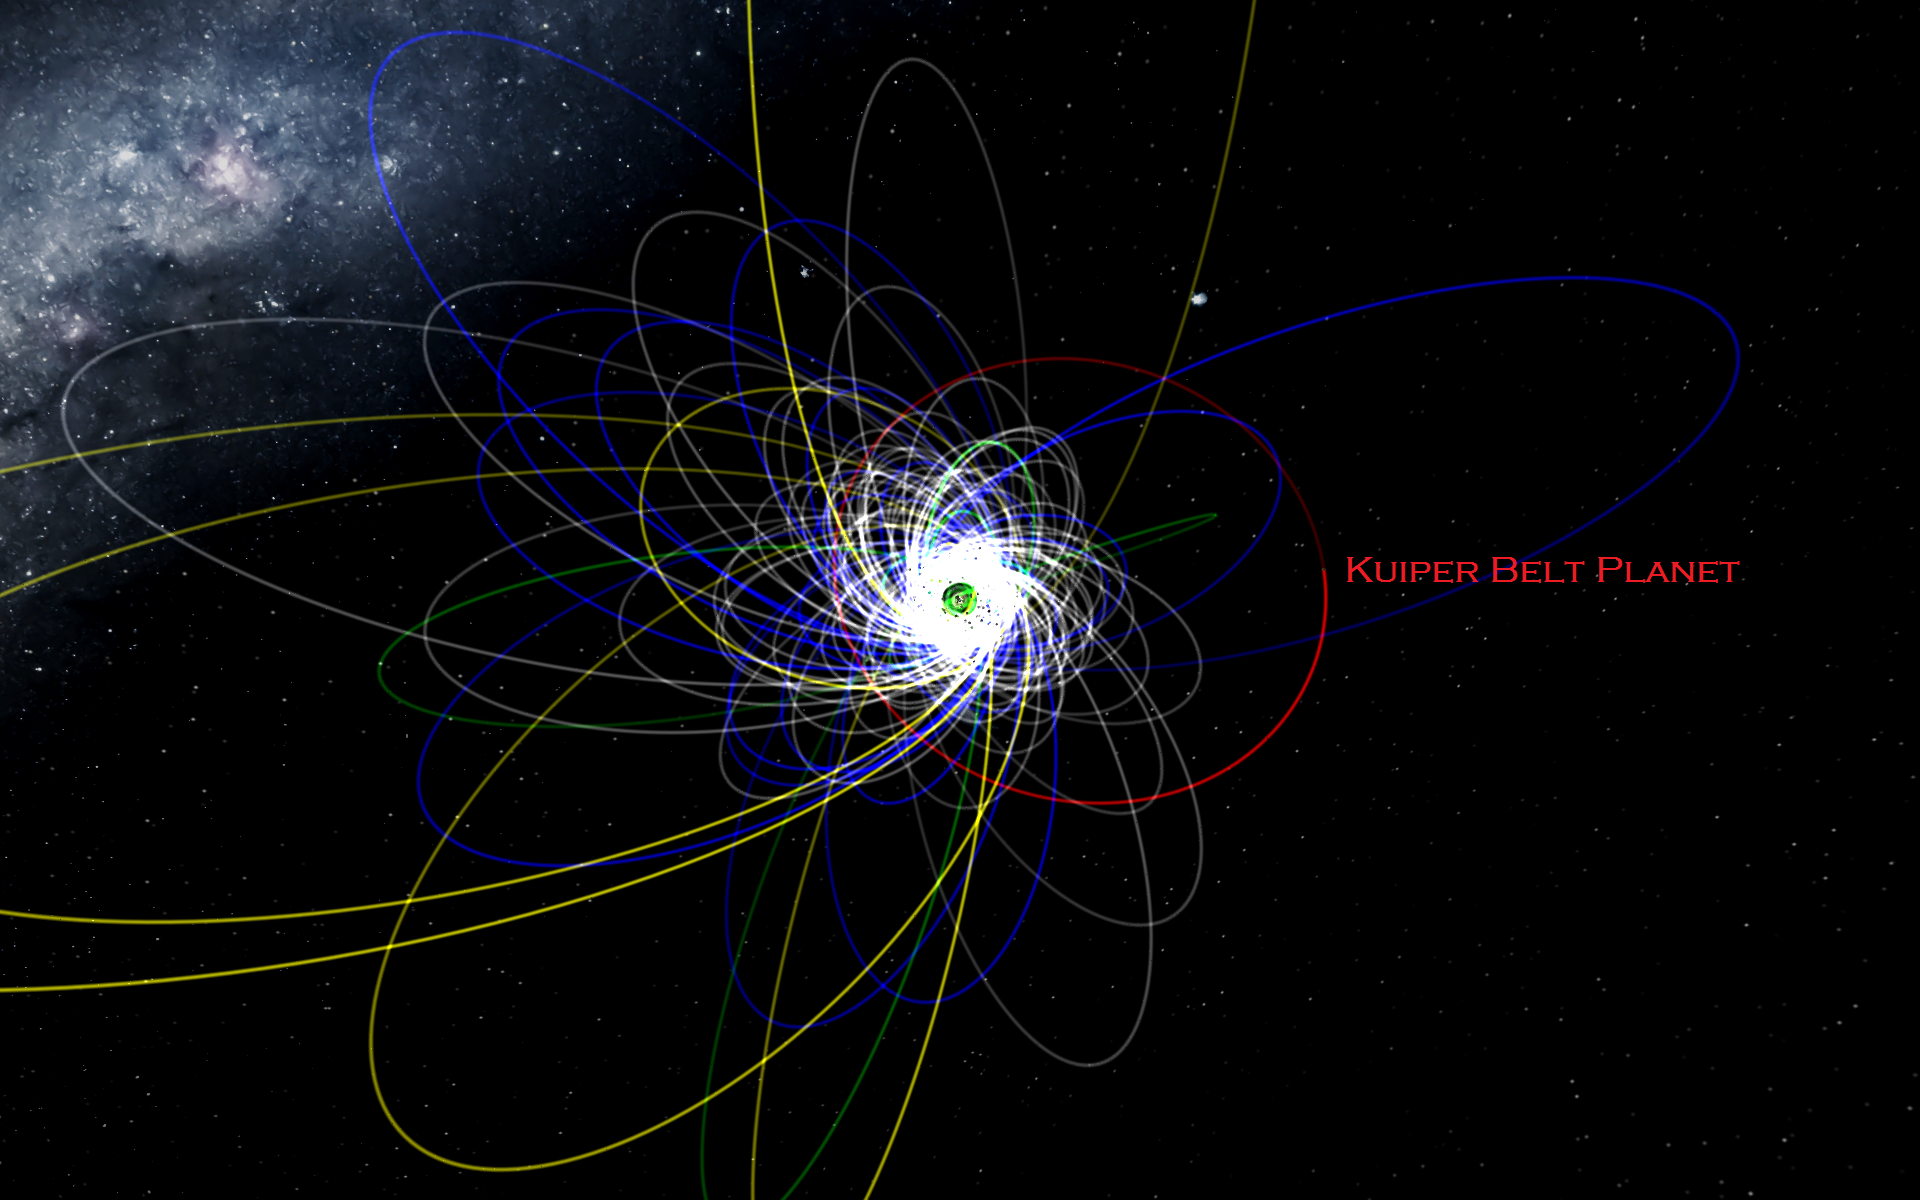 Em vermelho, a possível órbita do planeta hipotético no Cinturão de Kuiper. I